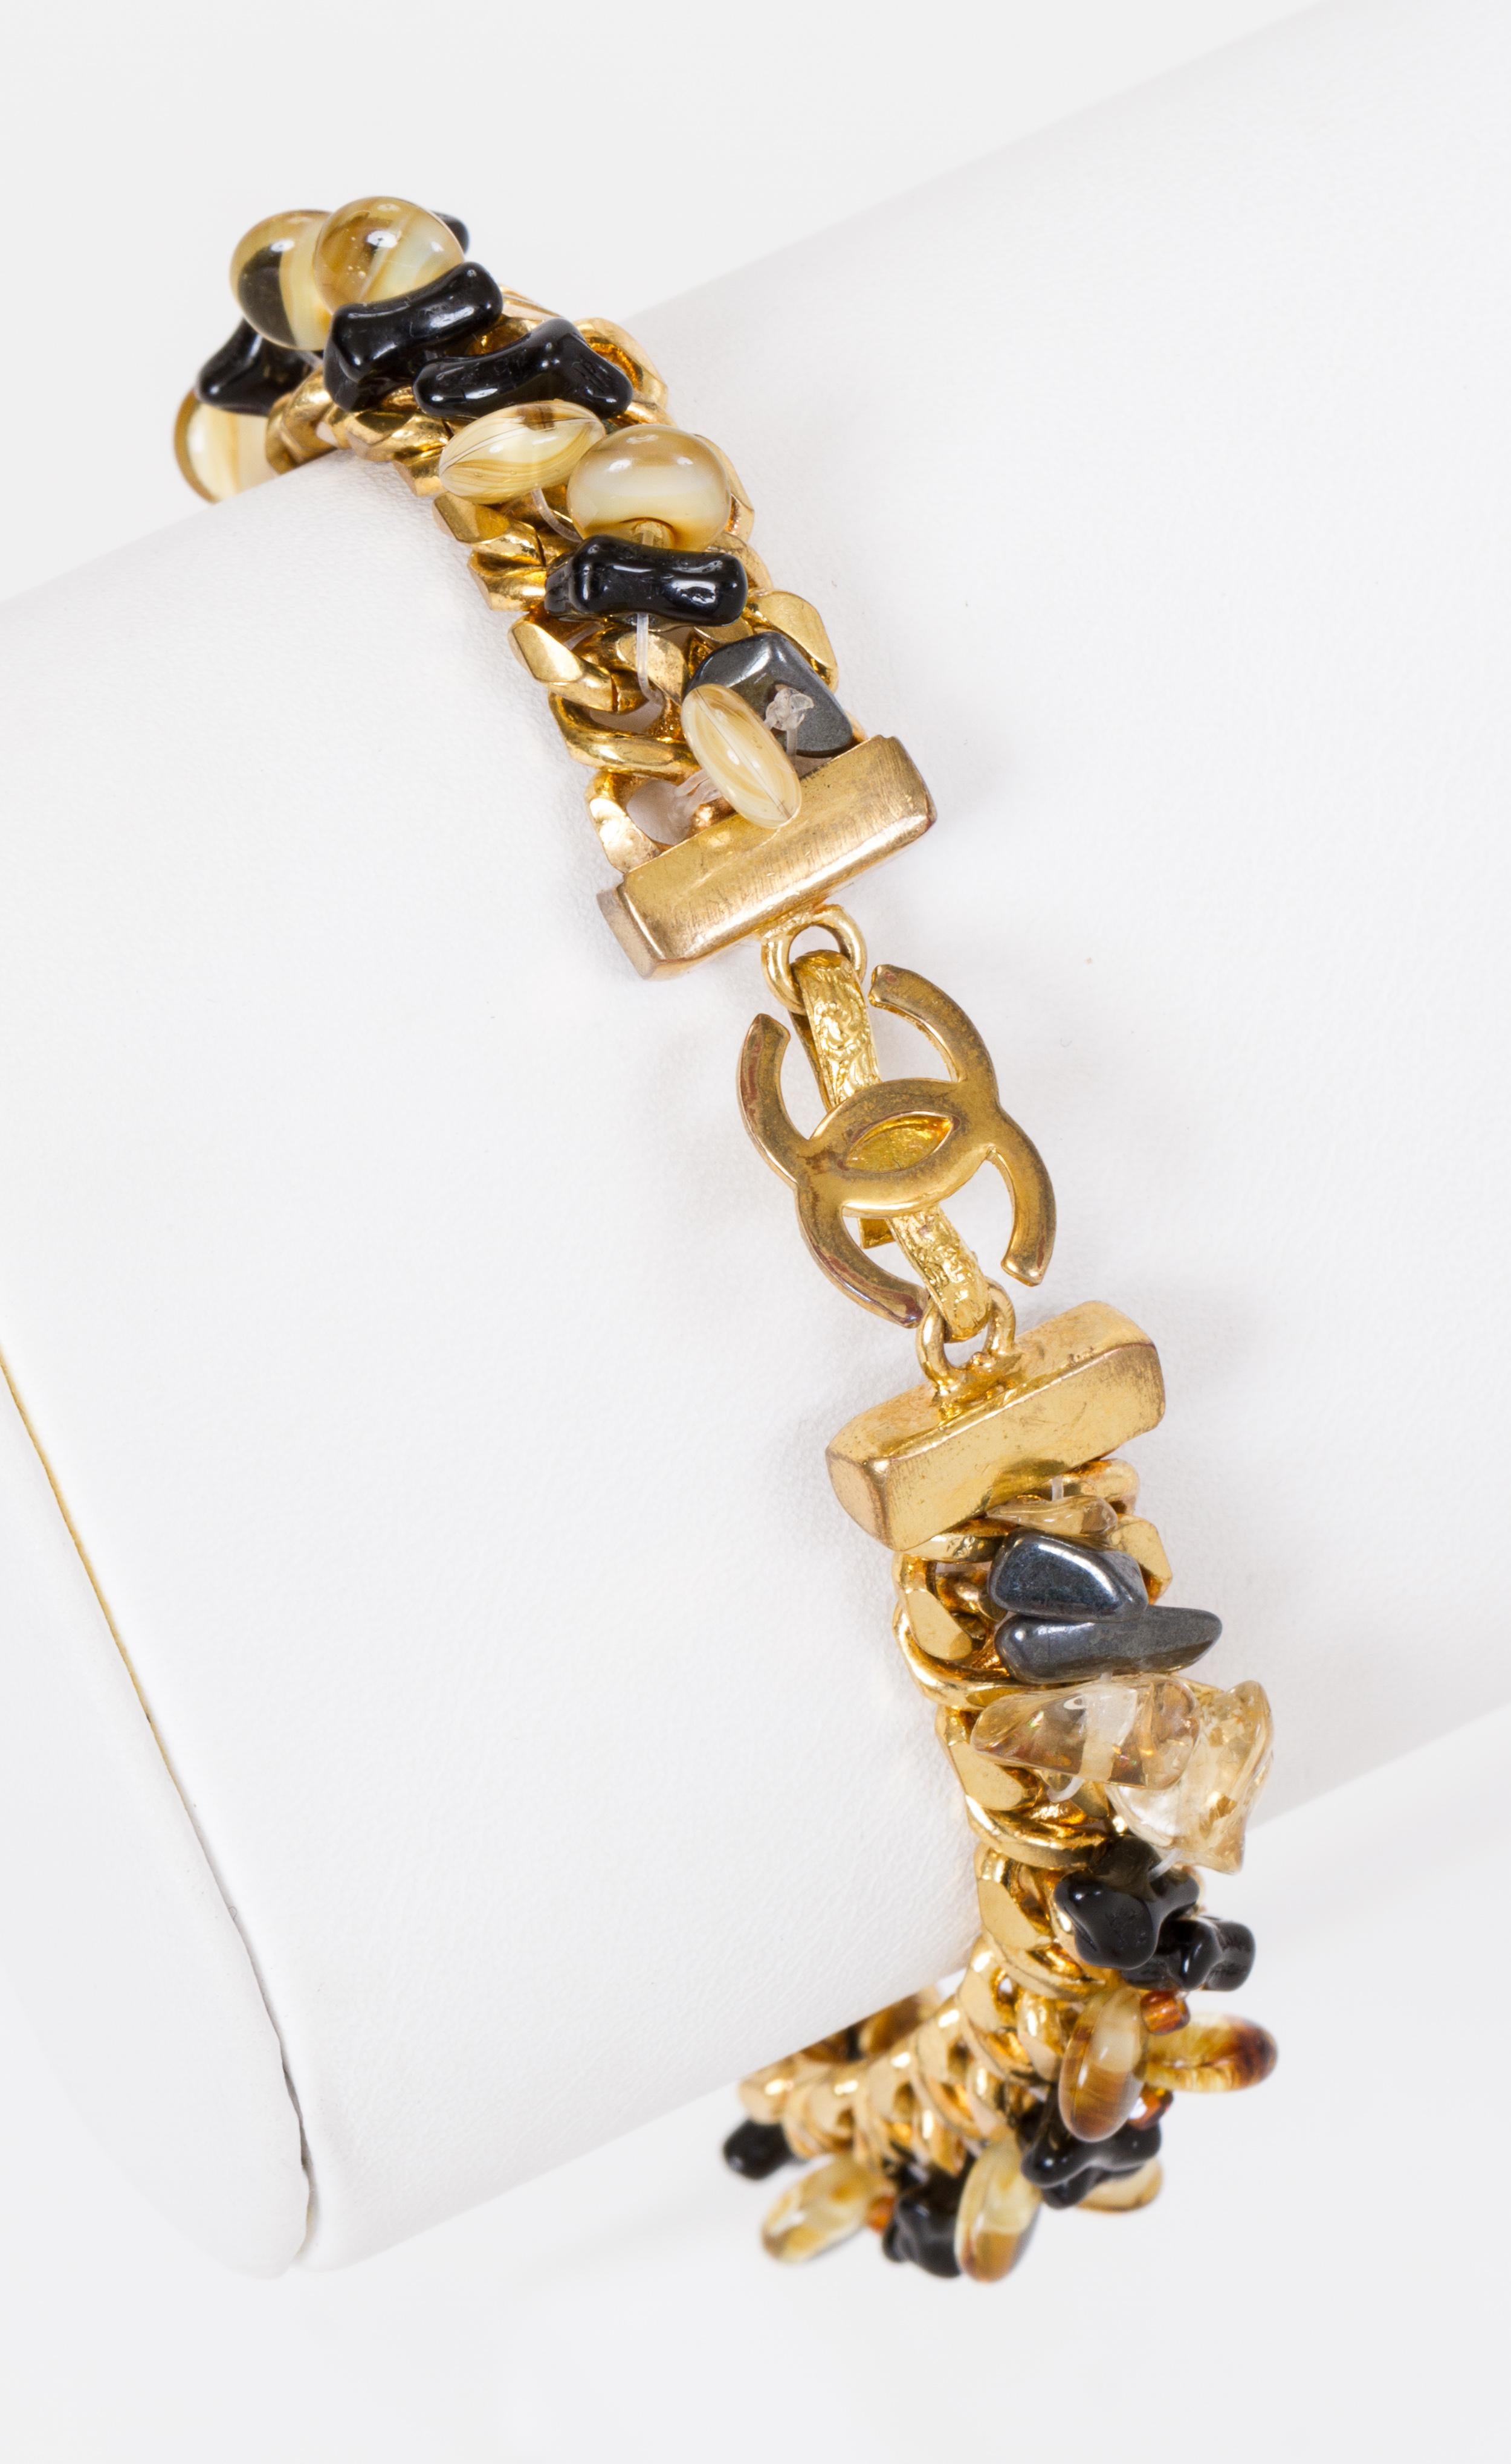 Bracelet Chanel en métal doré orné de perles de verre brunes et noires. Collection printemps 99. Livré avec une pochette originale. Usure mineure.